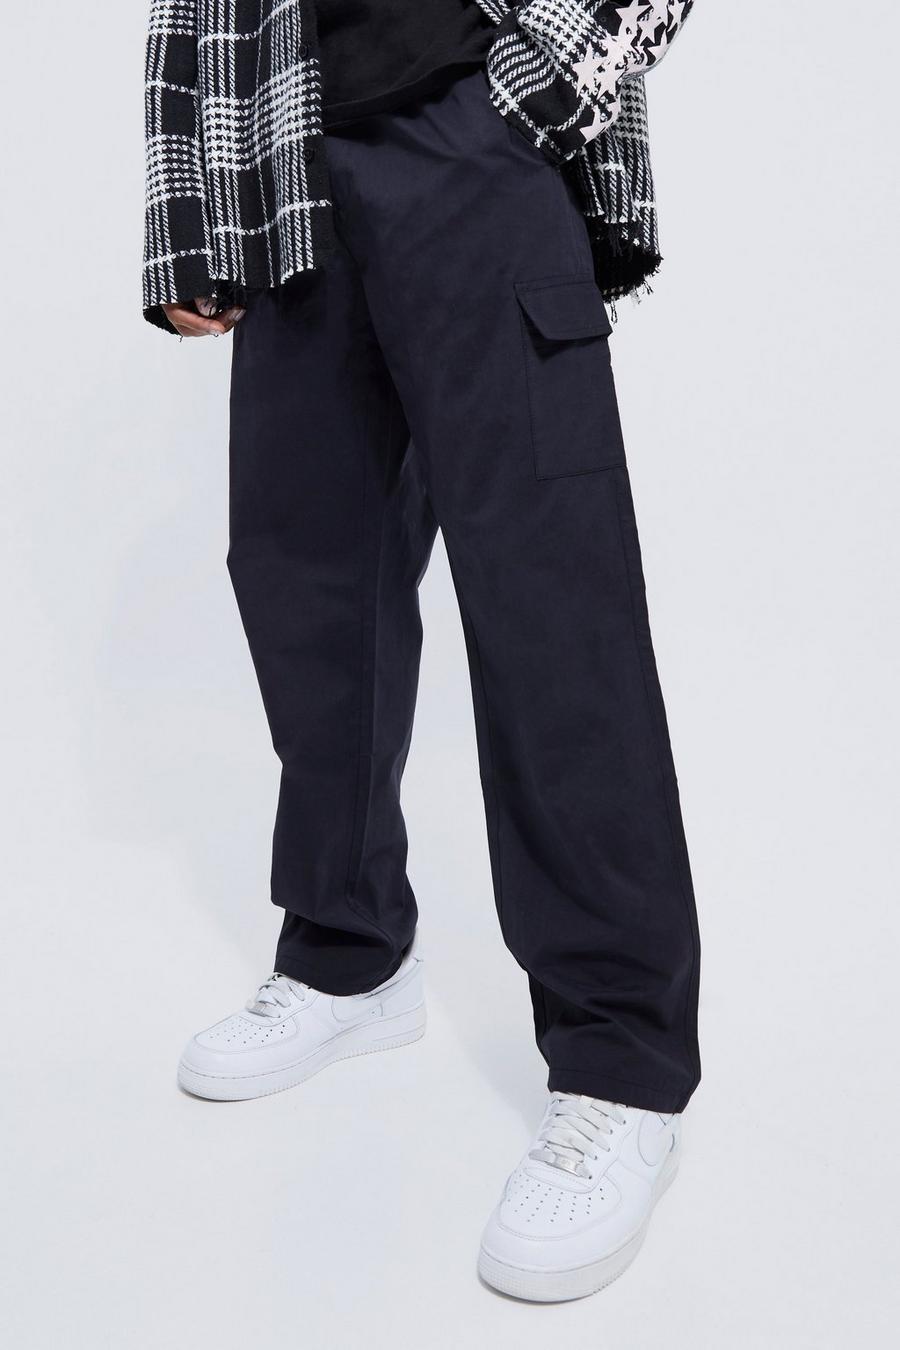 Pantalón cargo recto utilitario con cintura elástica, Black negro